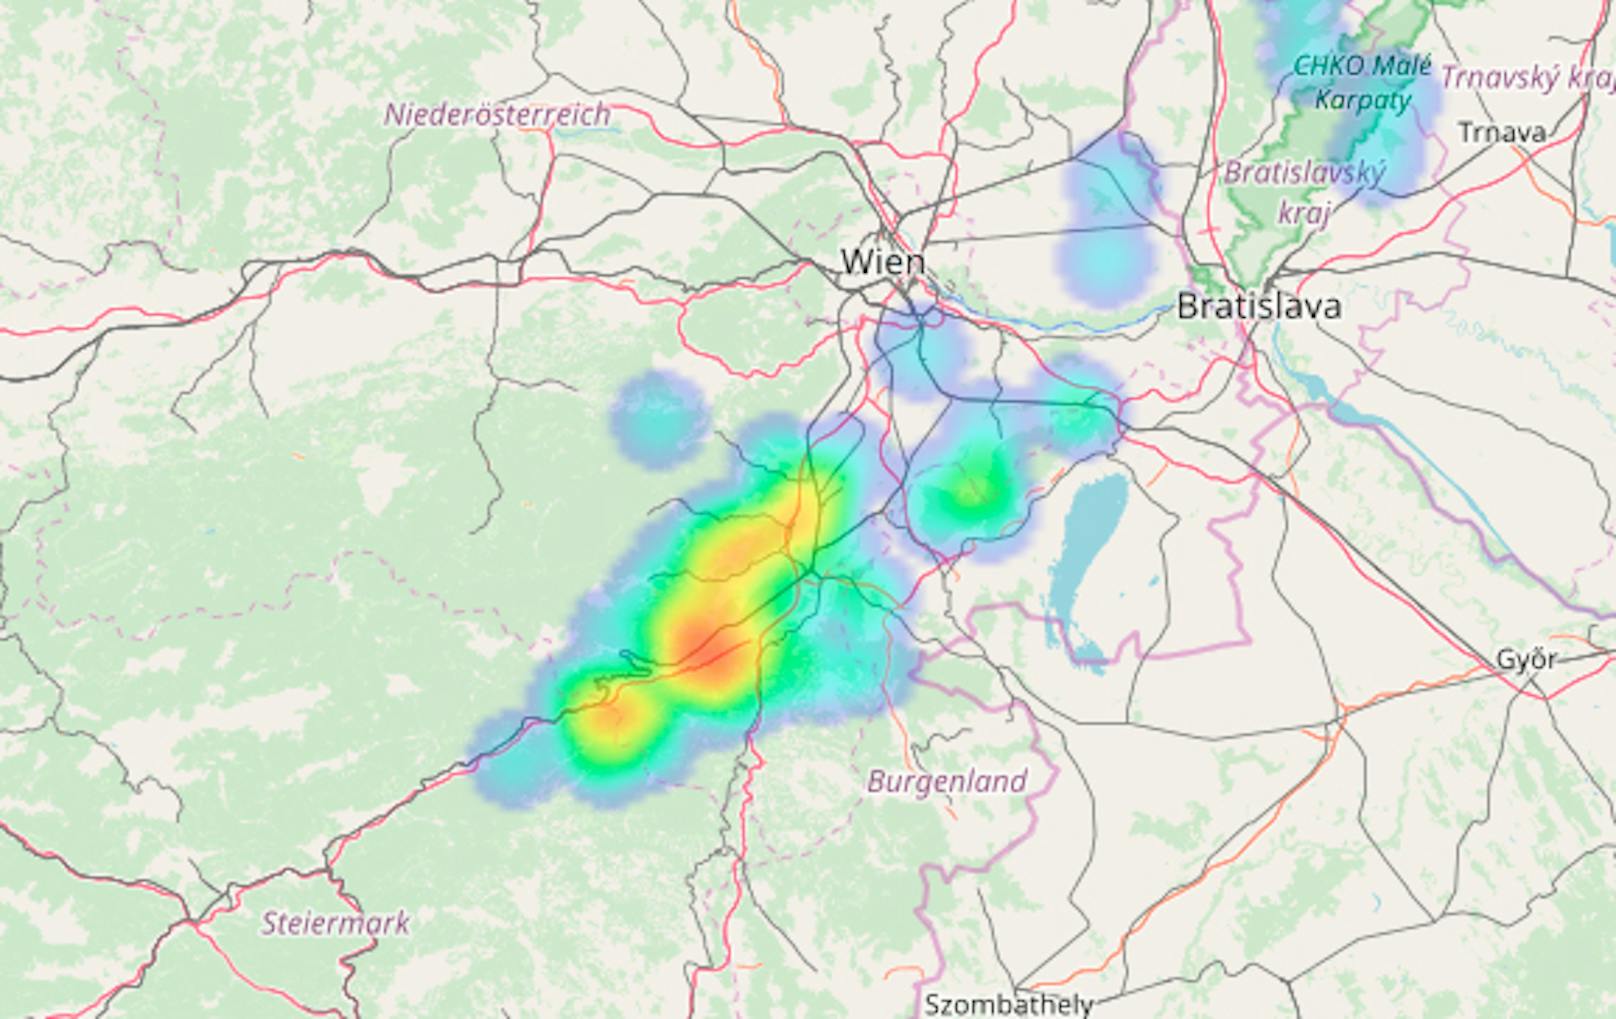 Live Gewitterkarte: Blitzaktivität im Süden Wiens in der letzten Stunde, 08.05 bis 09.05 Uhr